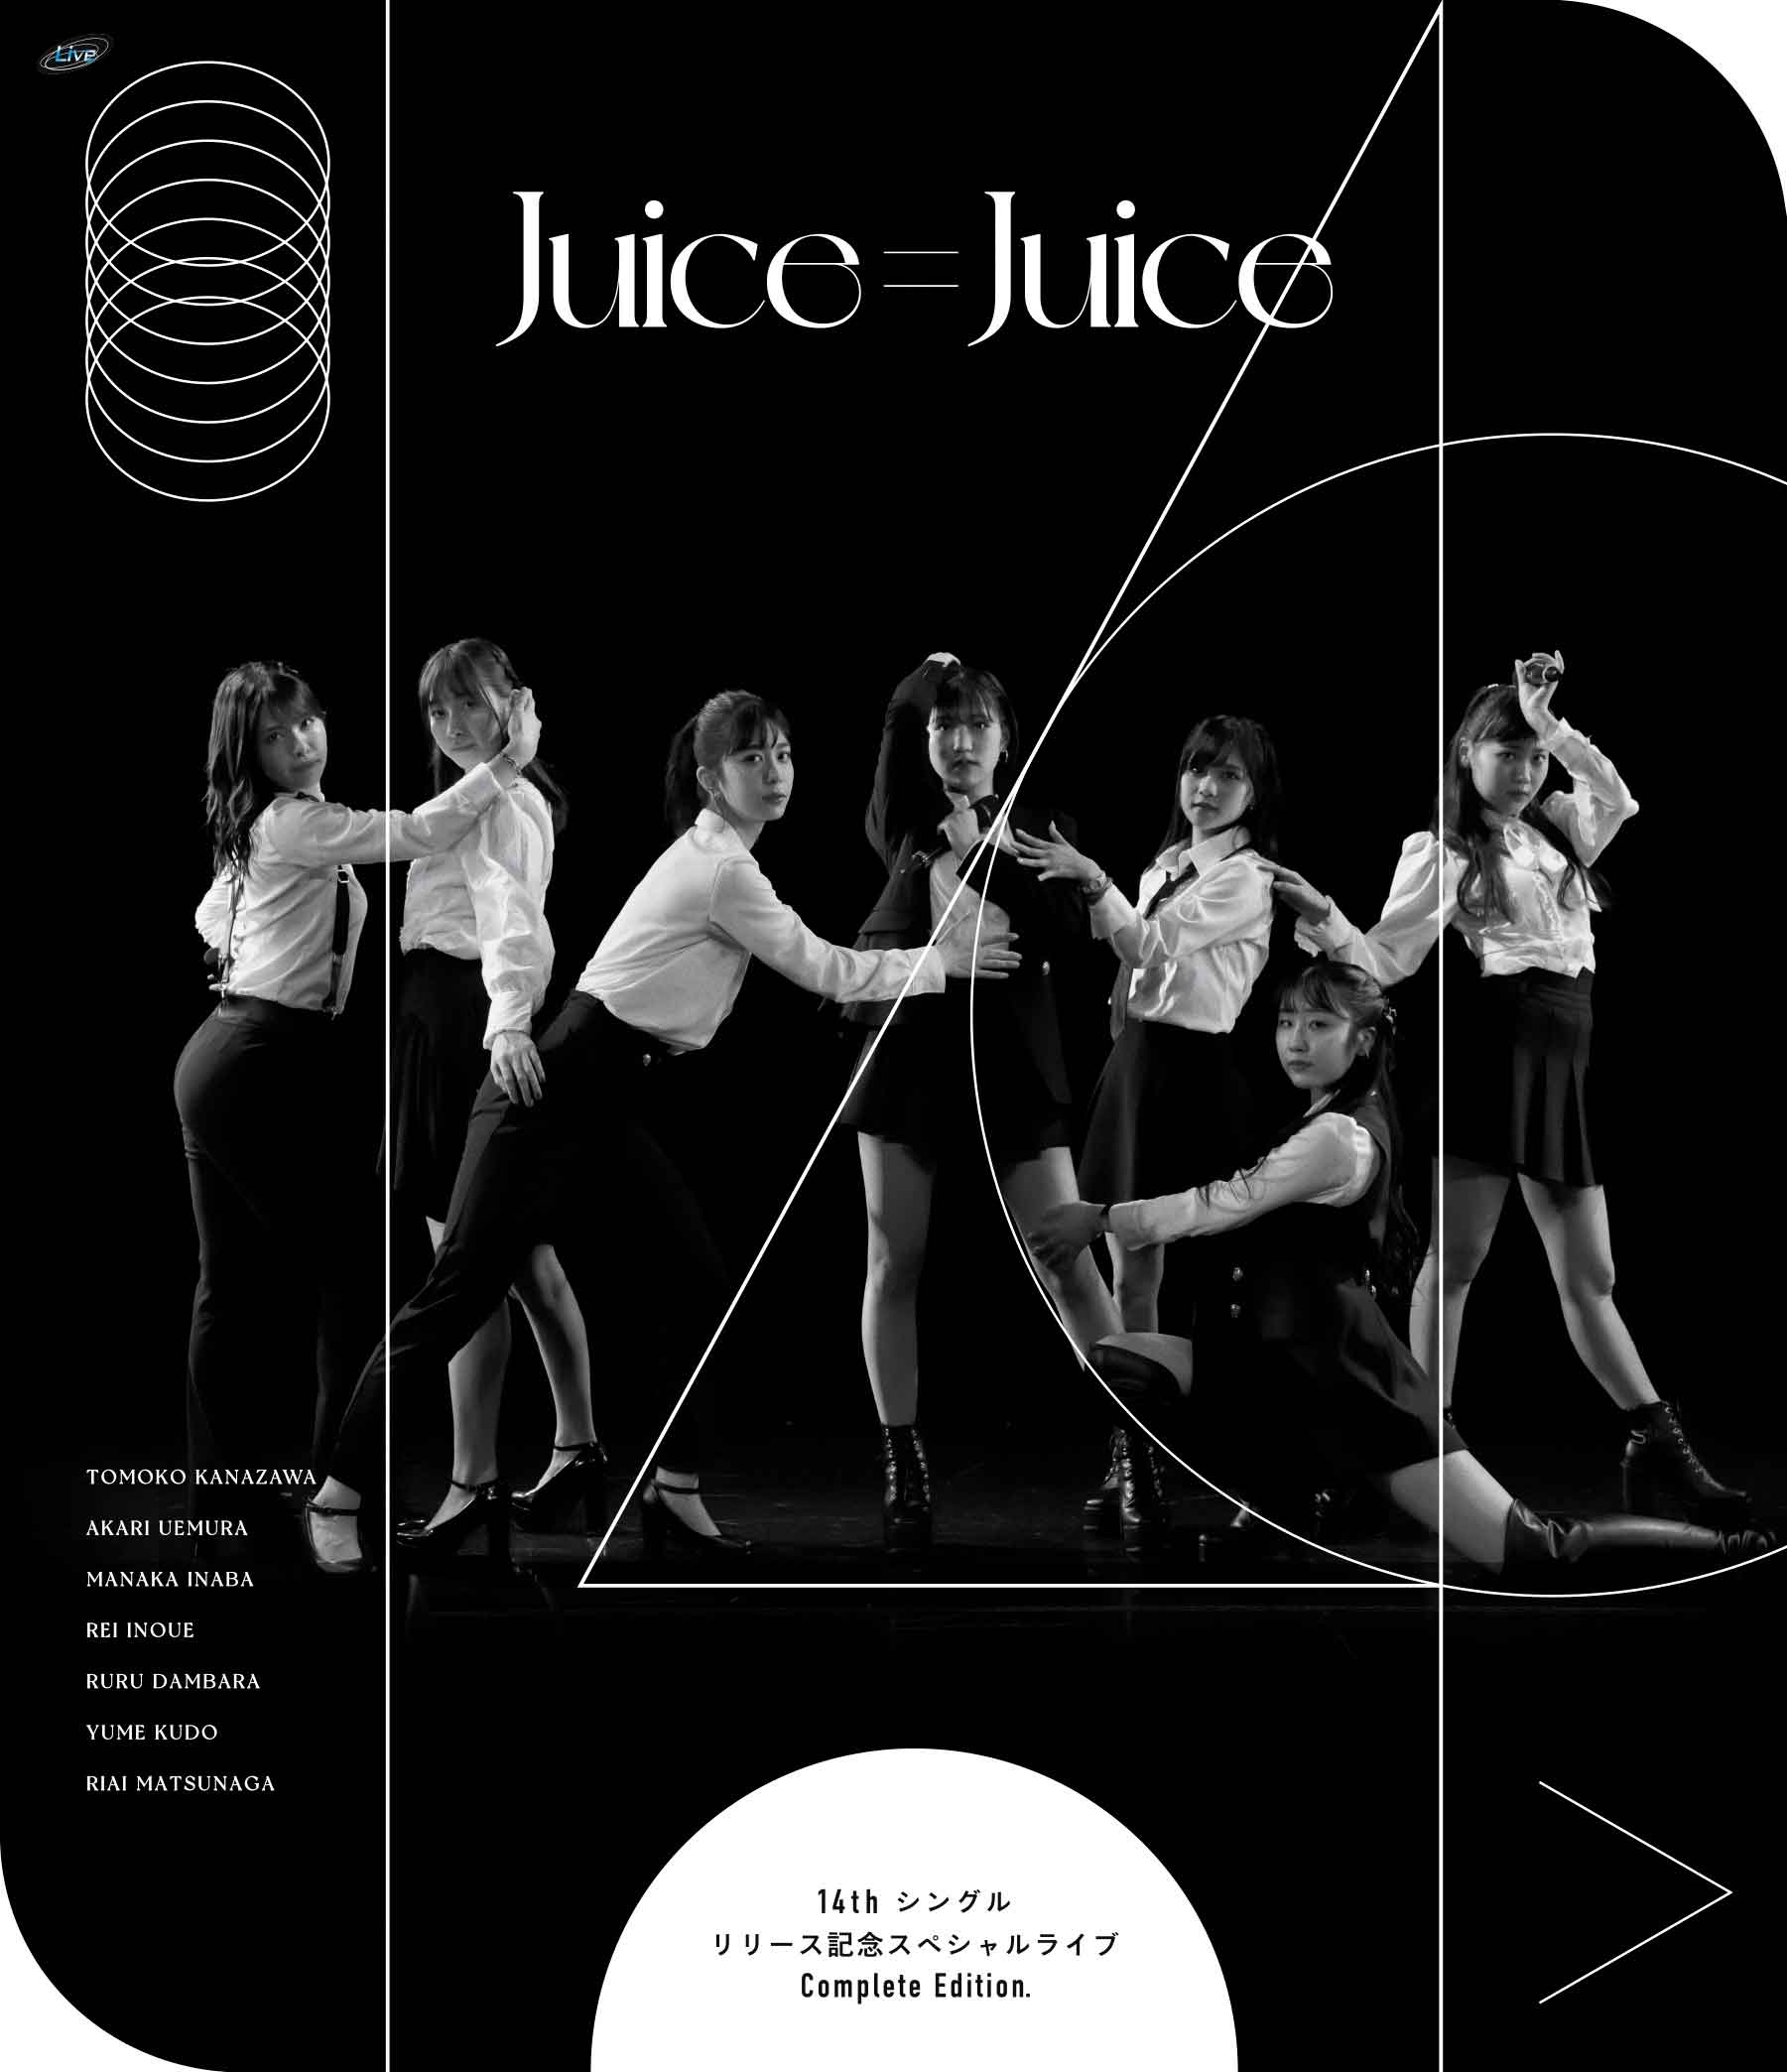 BD「Juice=Juice 14th シングルリリース記念スペシャルライブComplete Edition.」